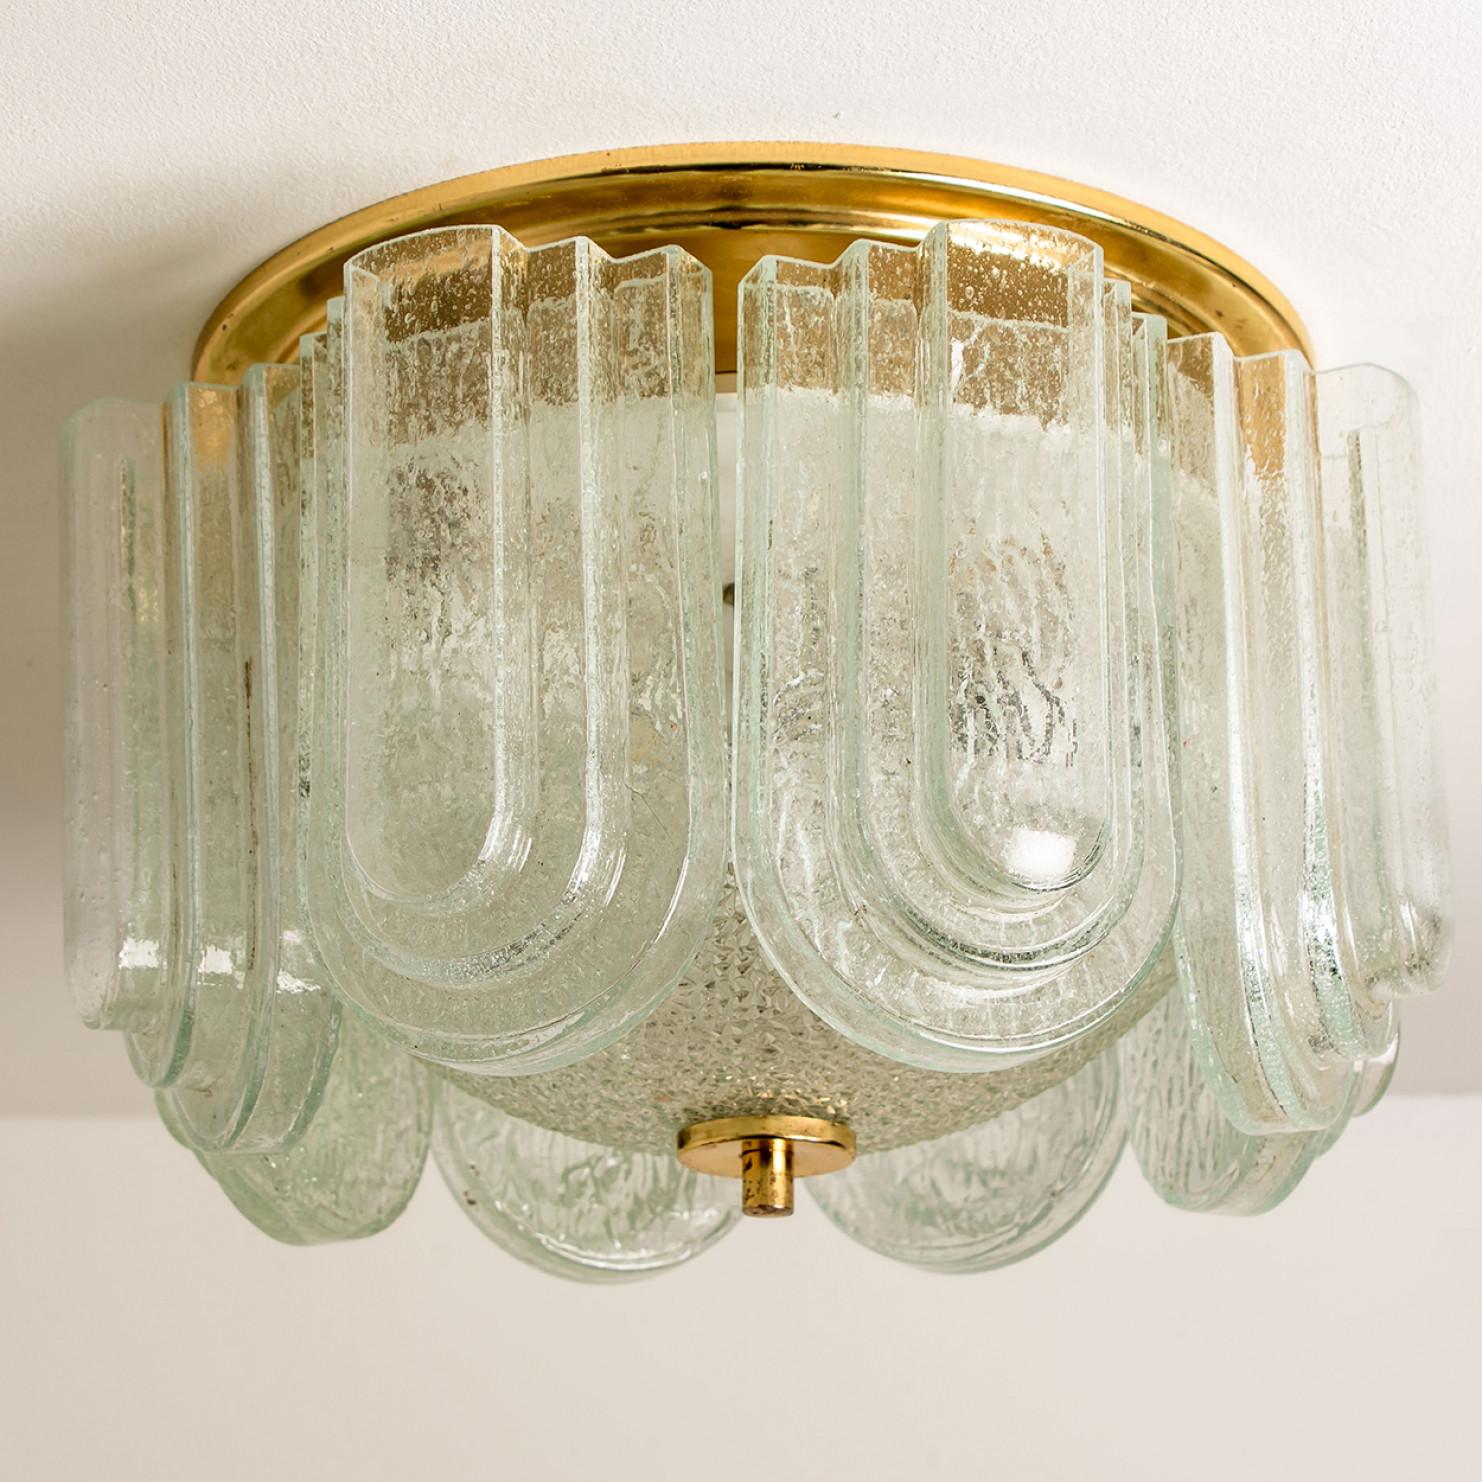 Unterputzdose aus Messing und beschichtetem Glas aus den 1960er Jahren der Firma Doria Leuchten in Deutschland, Europa. Die Lampe hat eine schöne gestufte Glaskonstruktion (Art Deco Stil) und eine Messingoberfläche. Hochwertiges Stück. Wahre